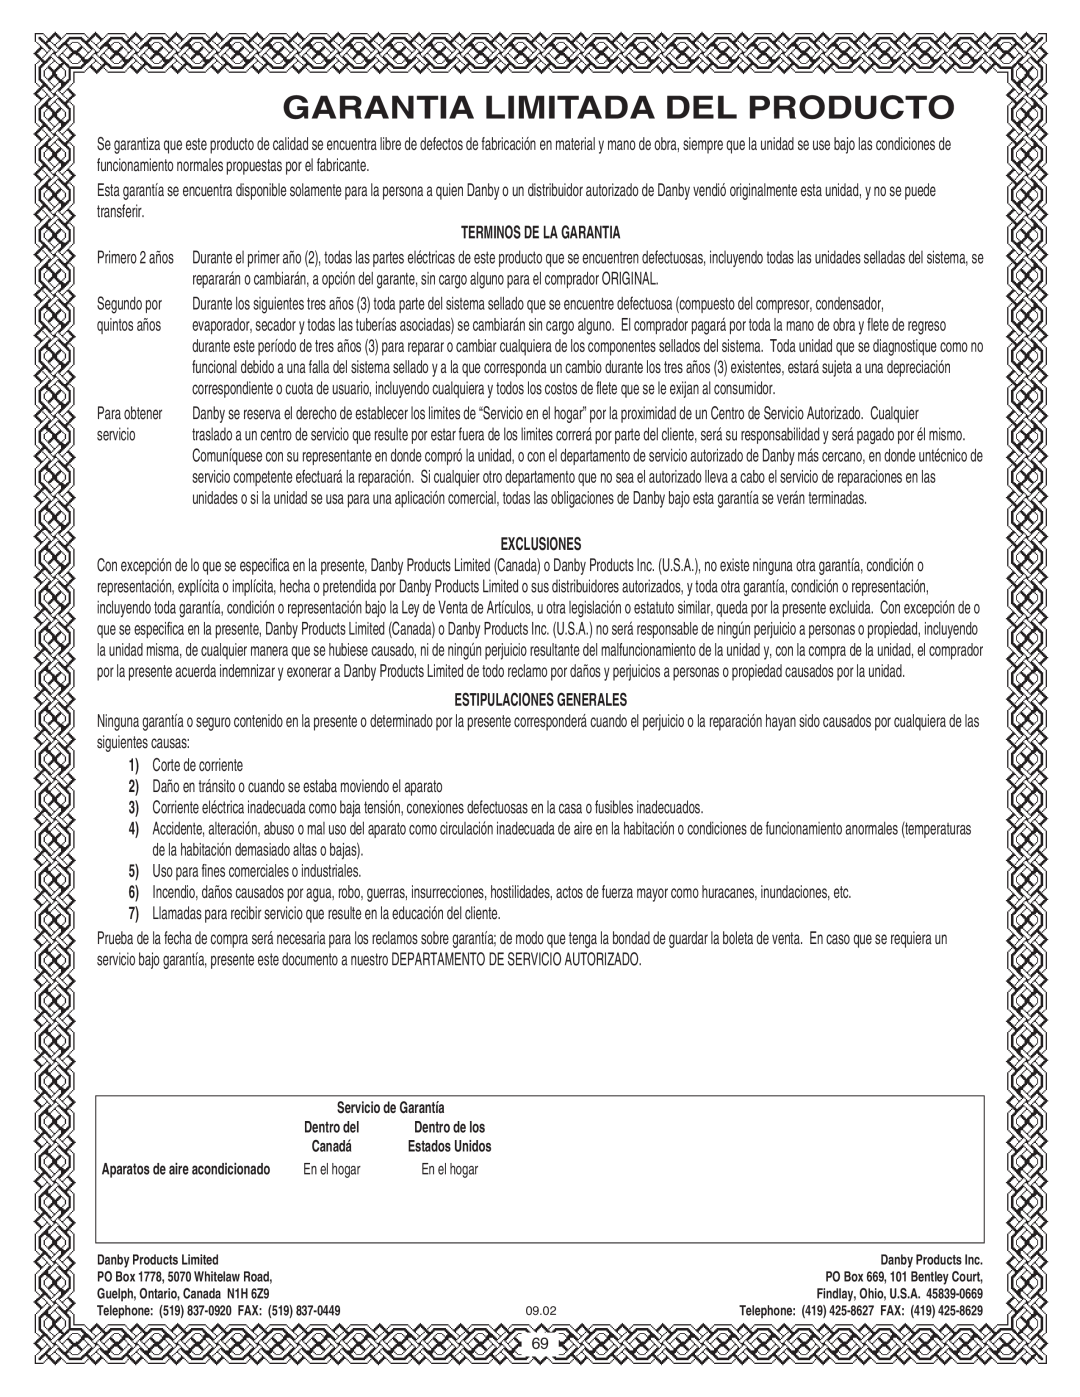 Danby SPAC8499 manual Garantia Limitada Del Producto, Terminos De La Garantia, Exclusiones, Estipulaciones Generales 